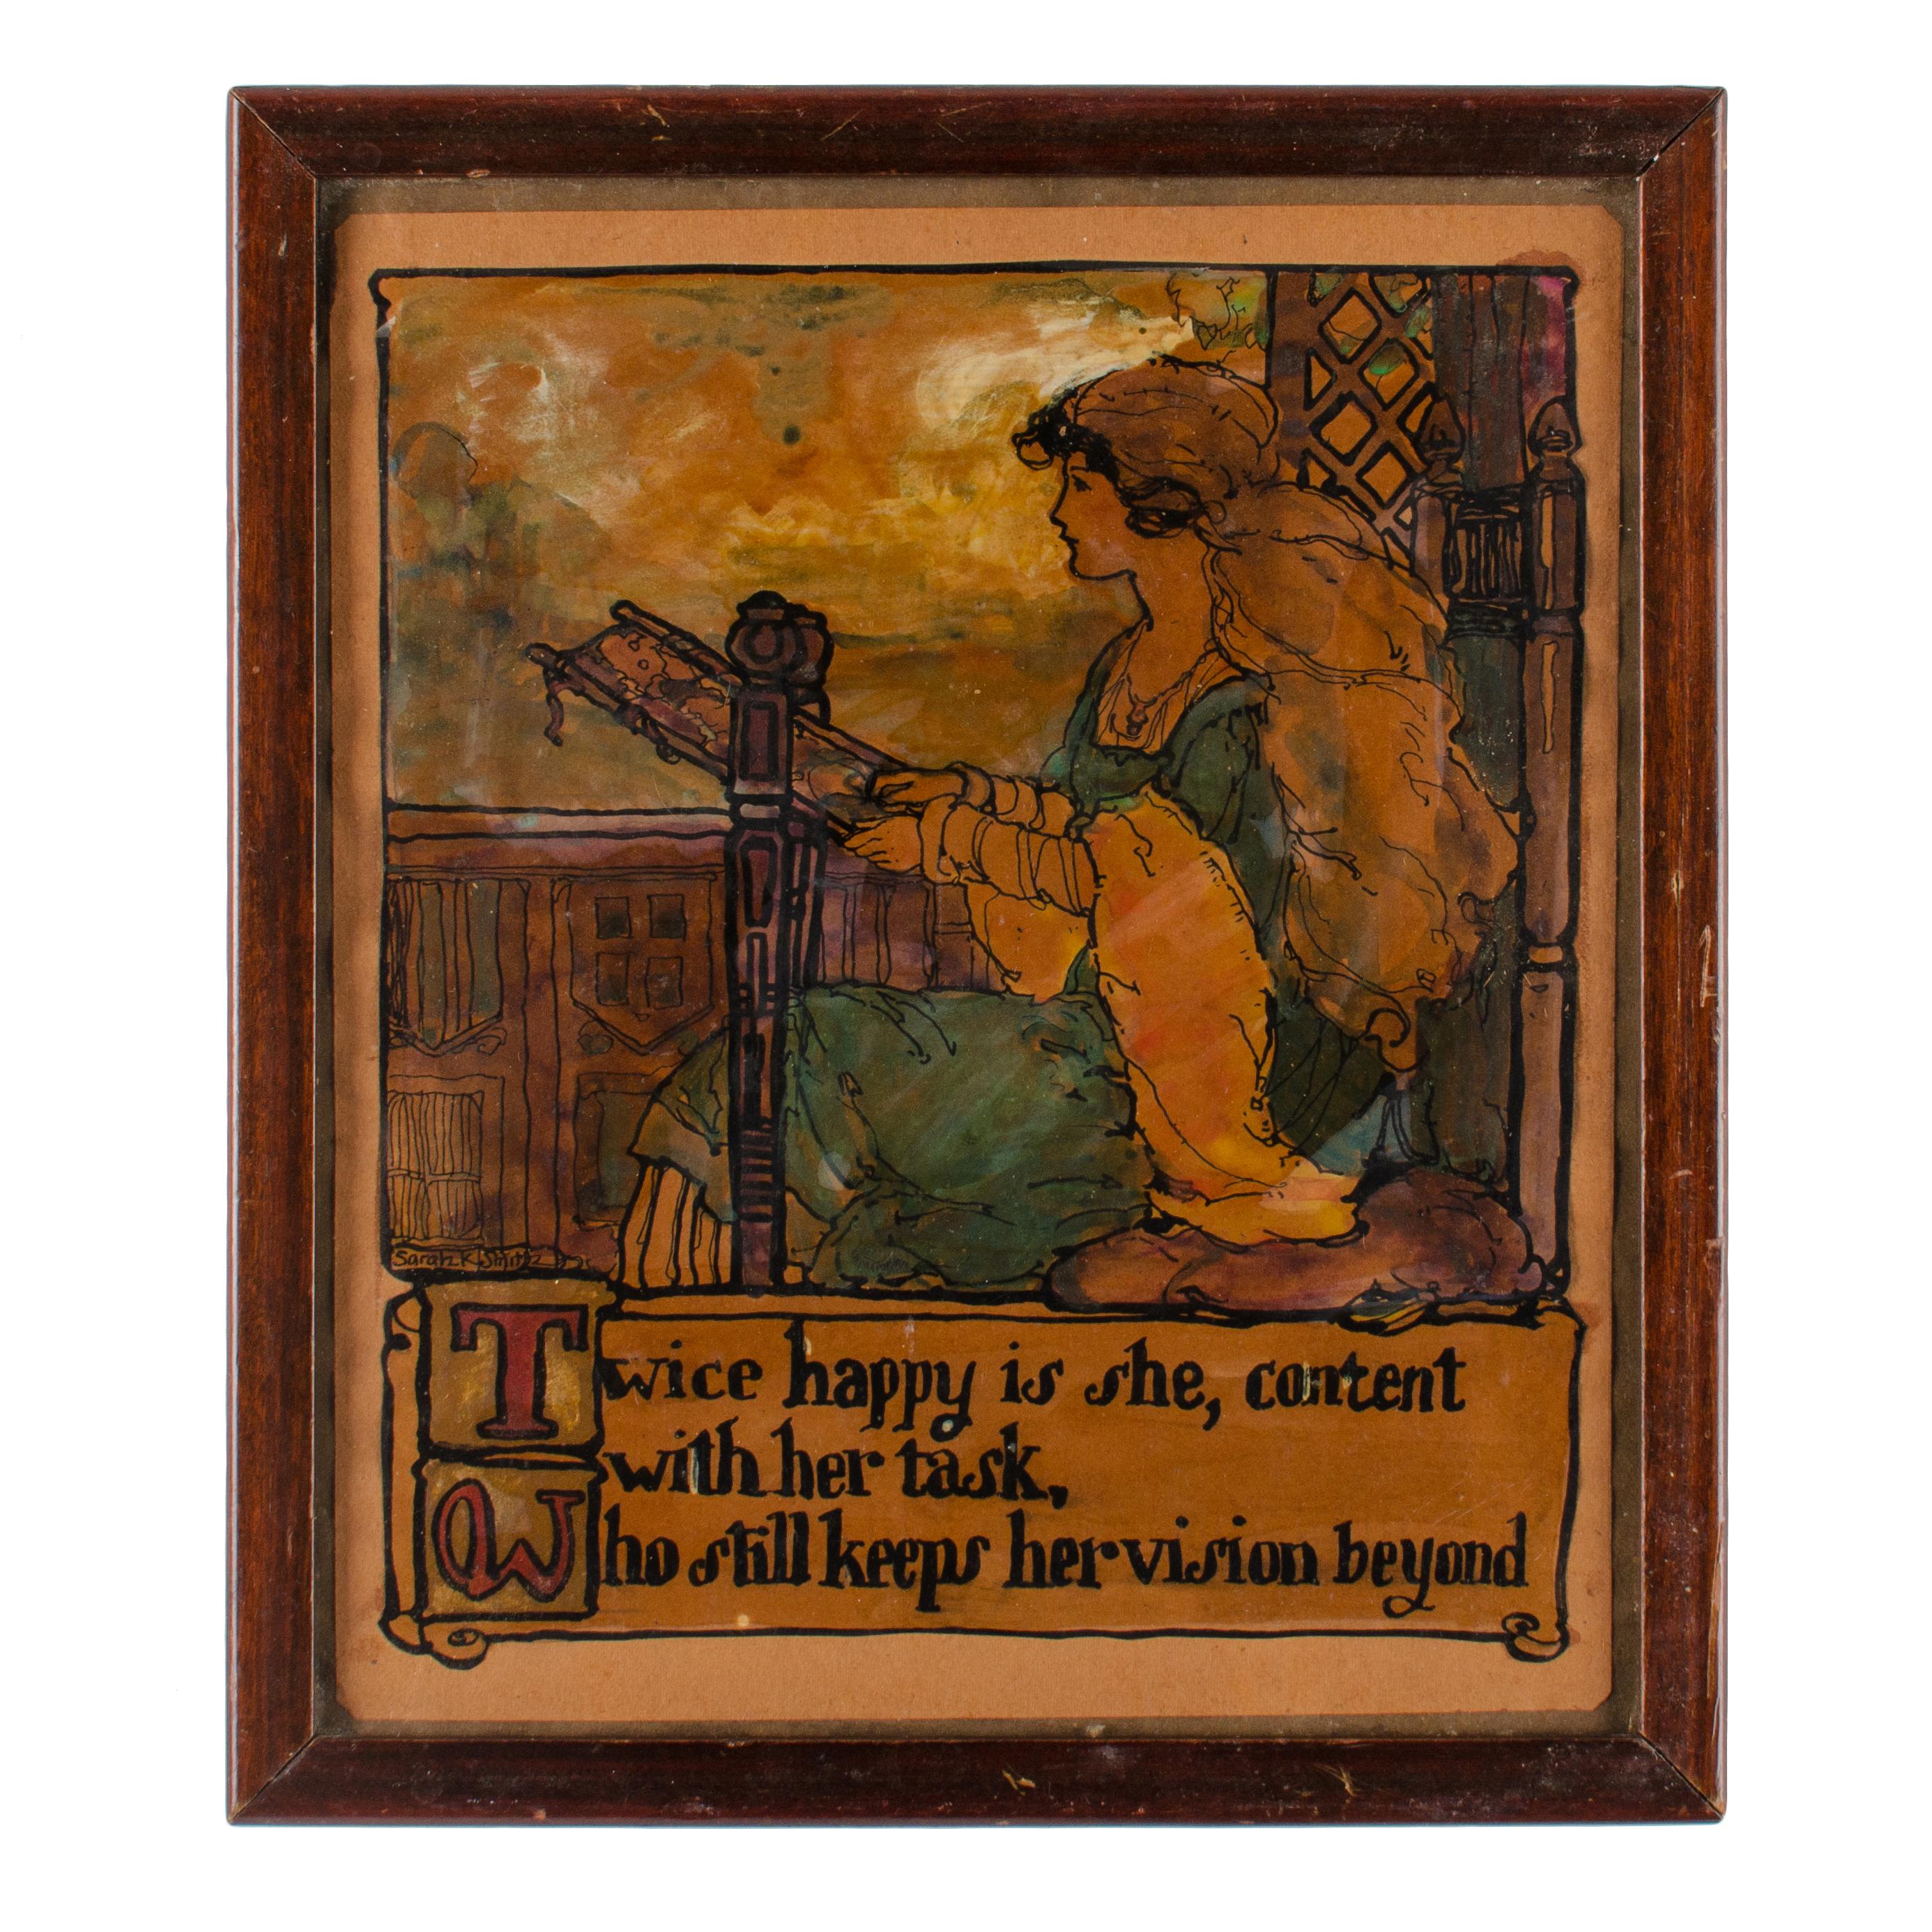 Sarah Katherine Smith
(Amerikaner, geb. 1877)

Geboren in Rio Vista, Kalifornien, besuchte sie das Art Institute of Chicago und anschließend die Boston Museum School. Die meiste Zeit ihres Lebens verbrachte sie in Wheaton, Illinois, wo sie am